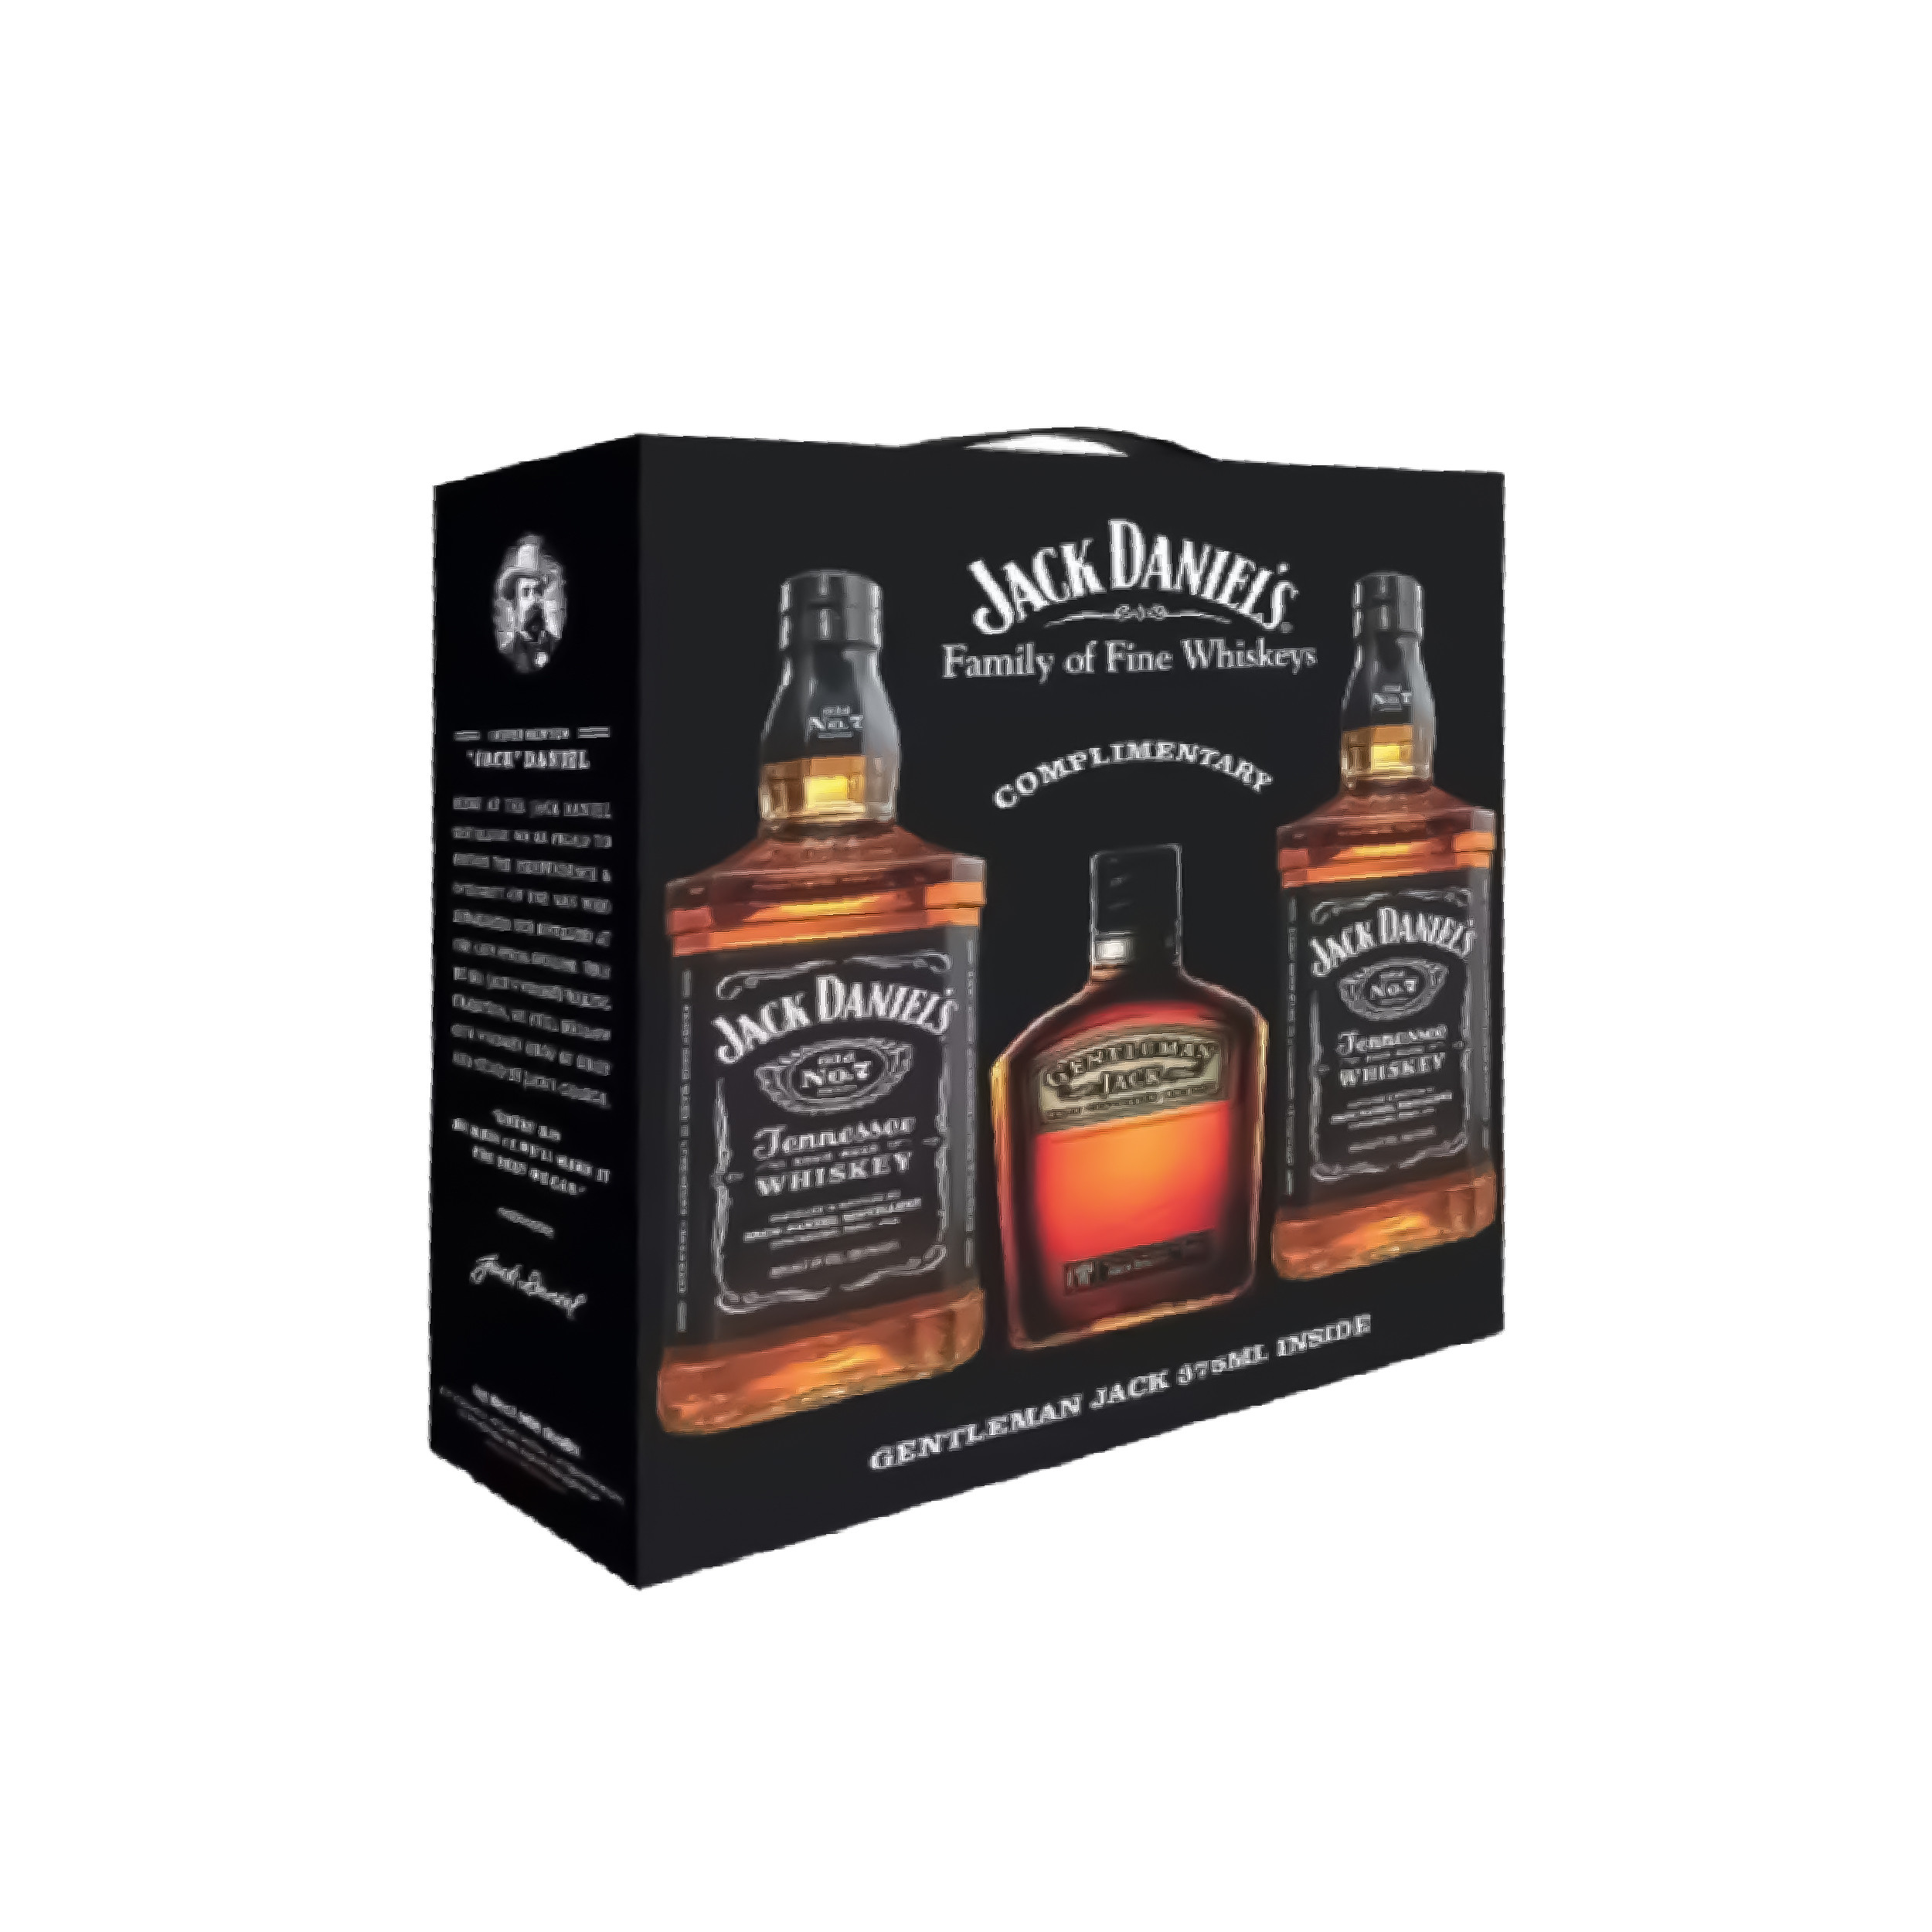 Jack Daniel’s Twin Pack  with Gentleman Jack